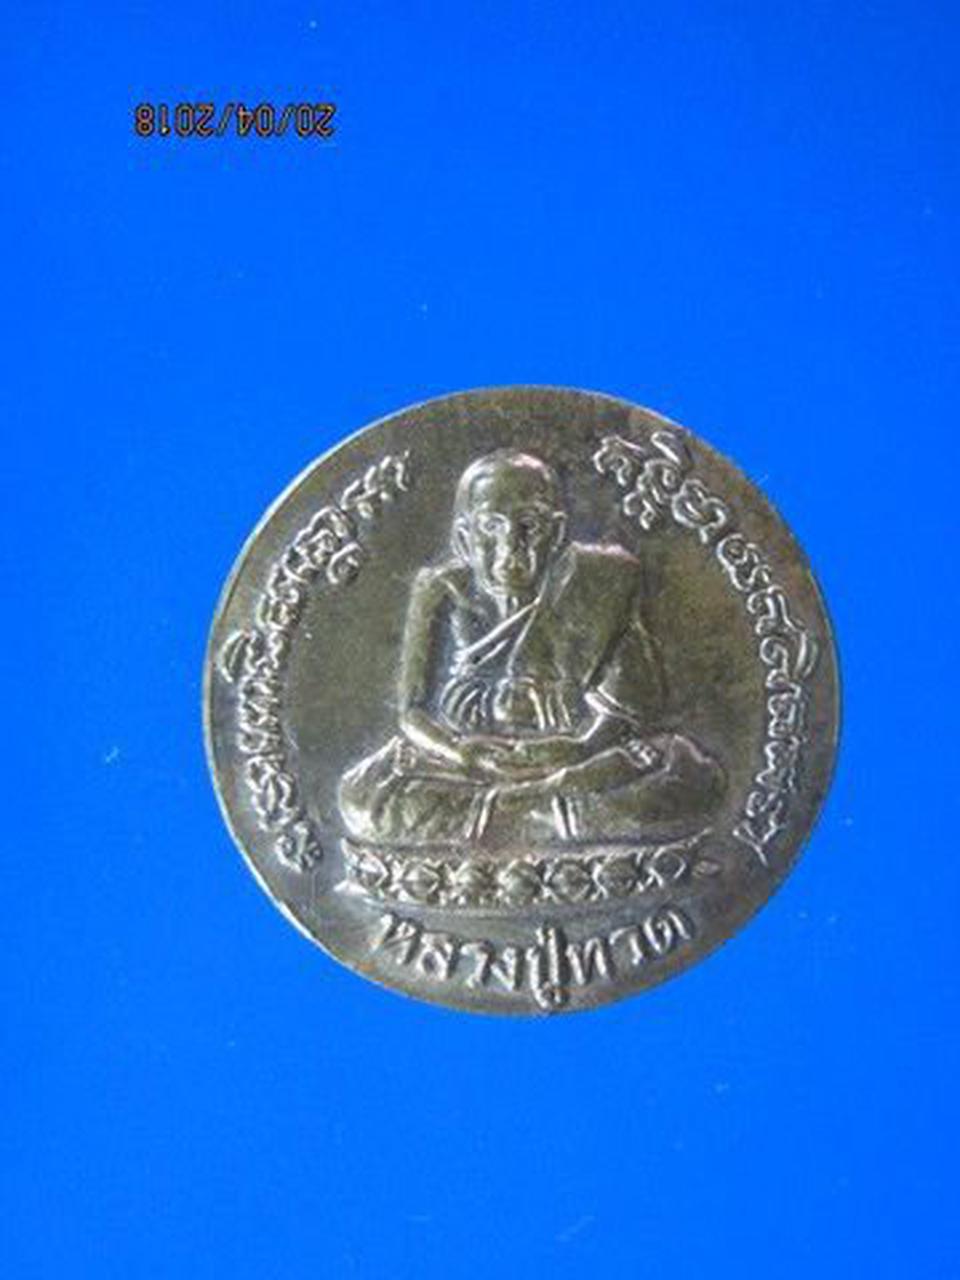 5207 เหรียญขวัญถุงรุ่นแรก หลวงพ่อทวด วัด ก.ม.7 ปี 2538 เบตง  รูปเล็กที่ 2